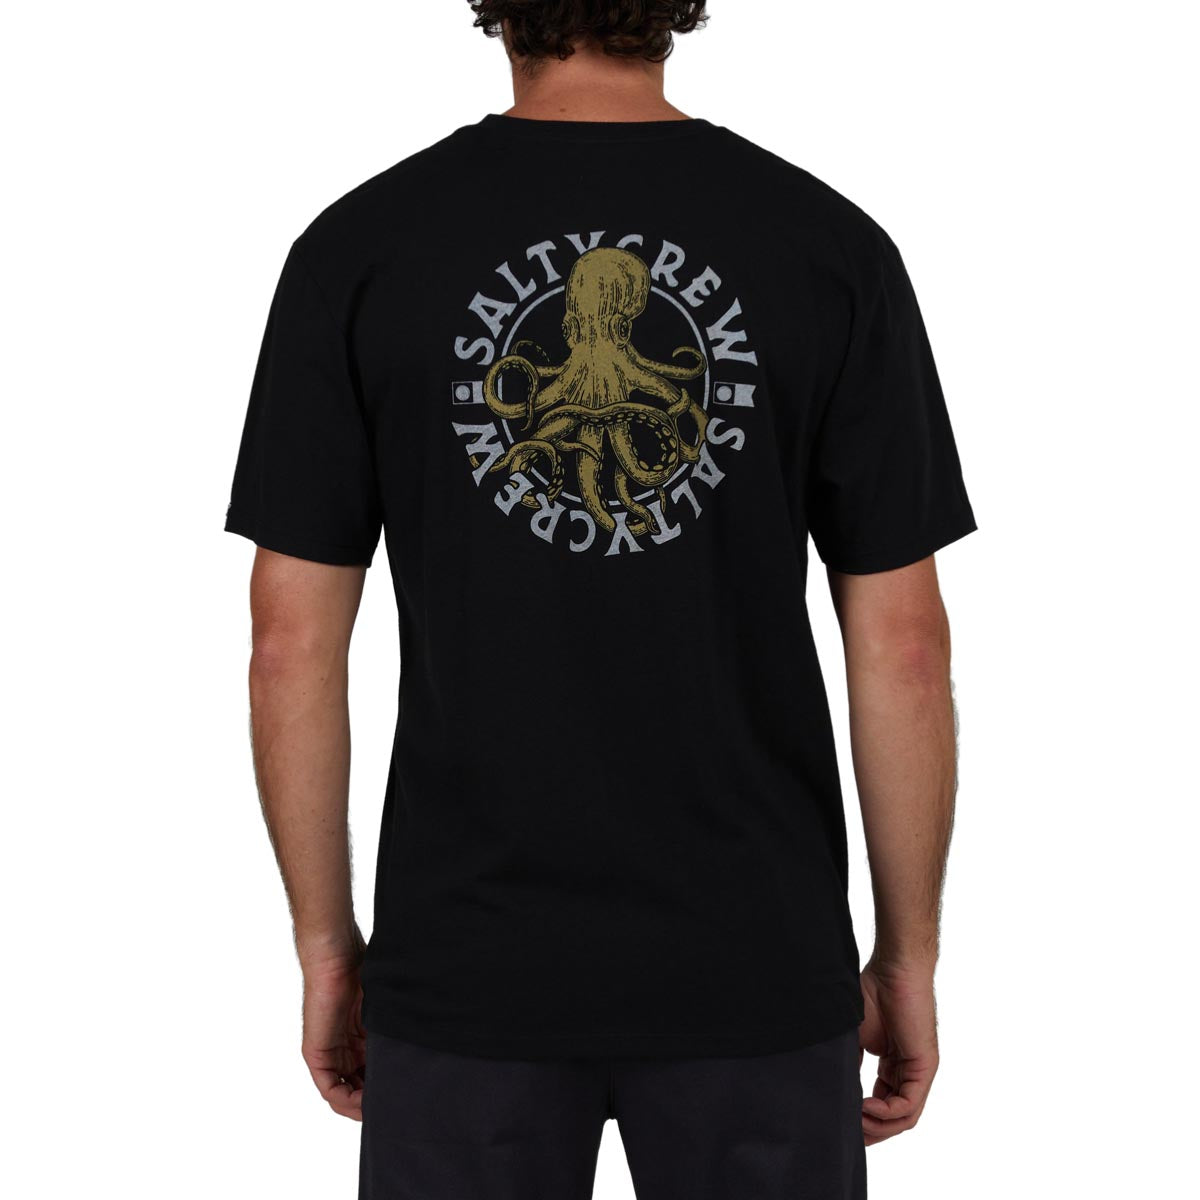 Salty Crew Tentacles Premium T-Shirt - Black image 2